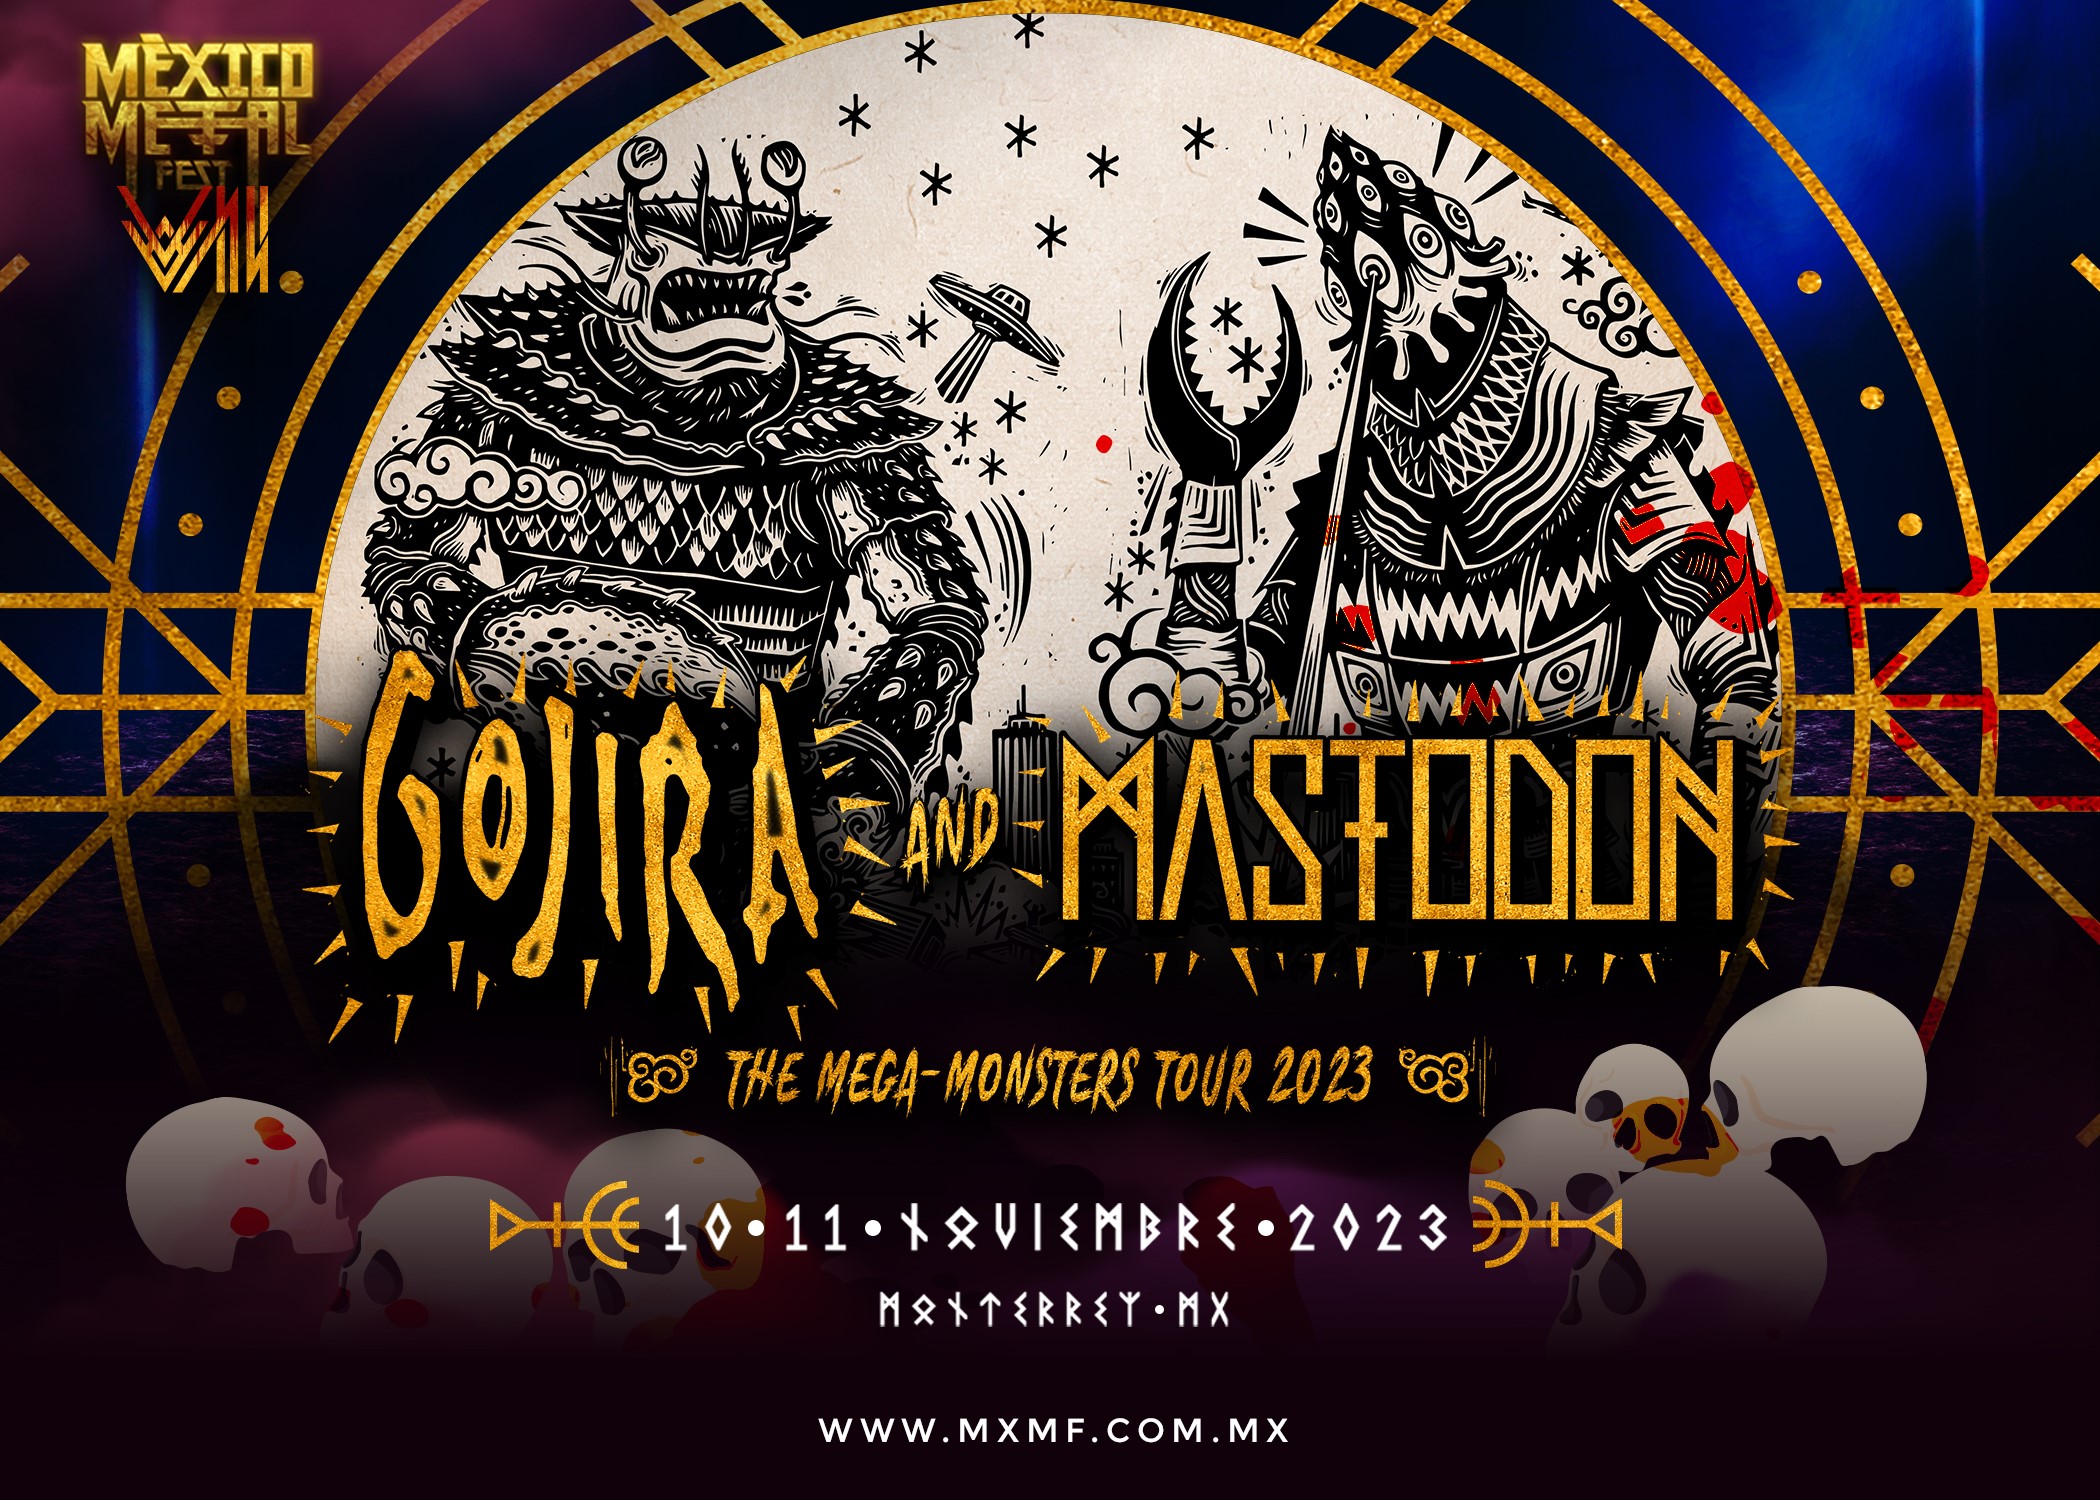 mastodon and gojira tour dates